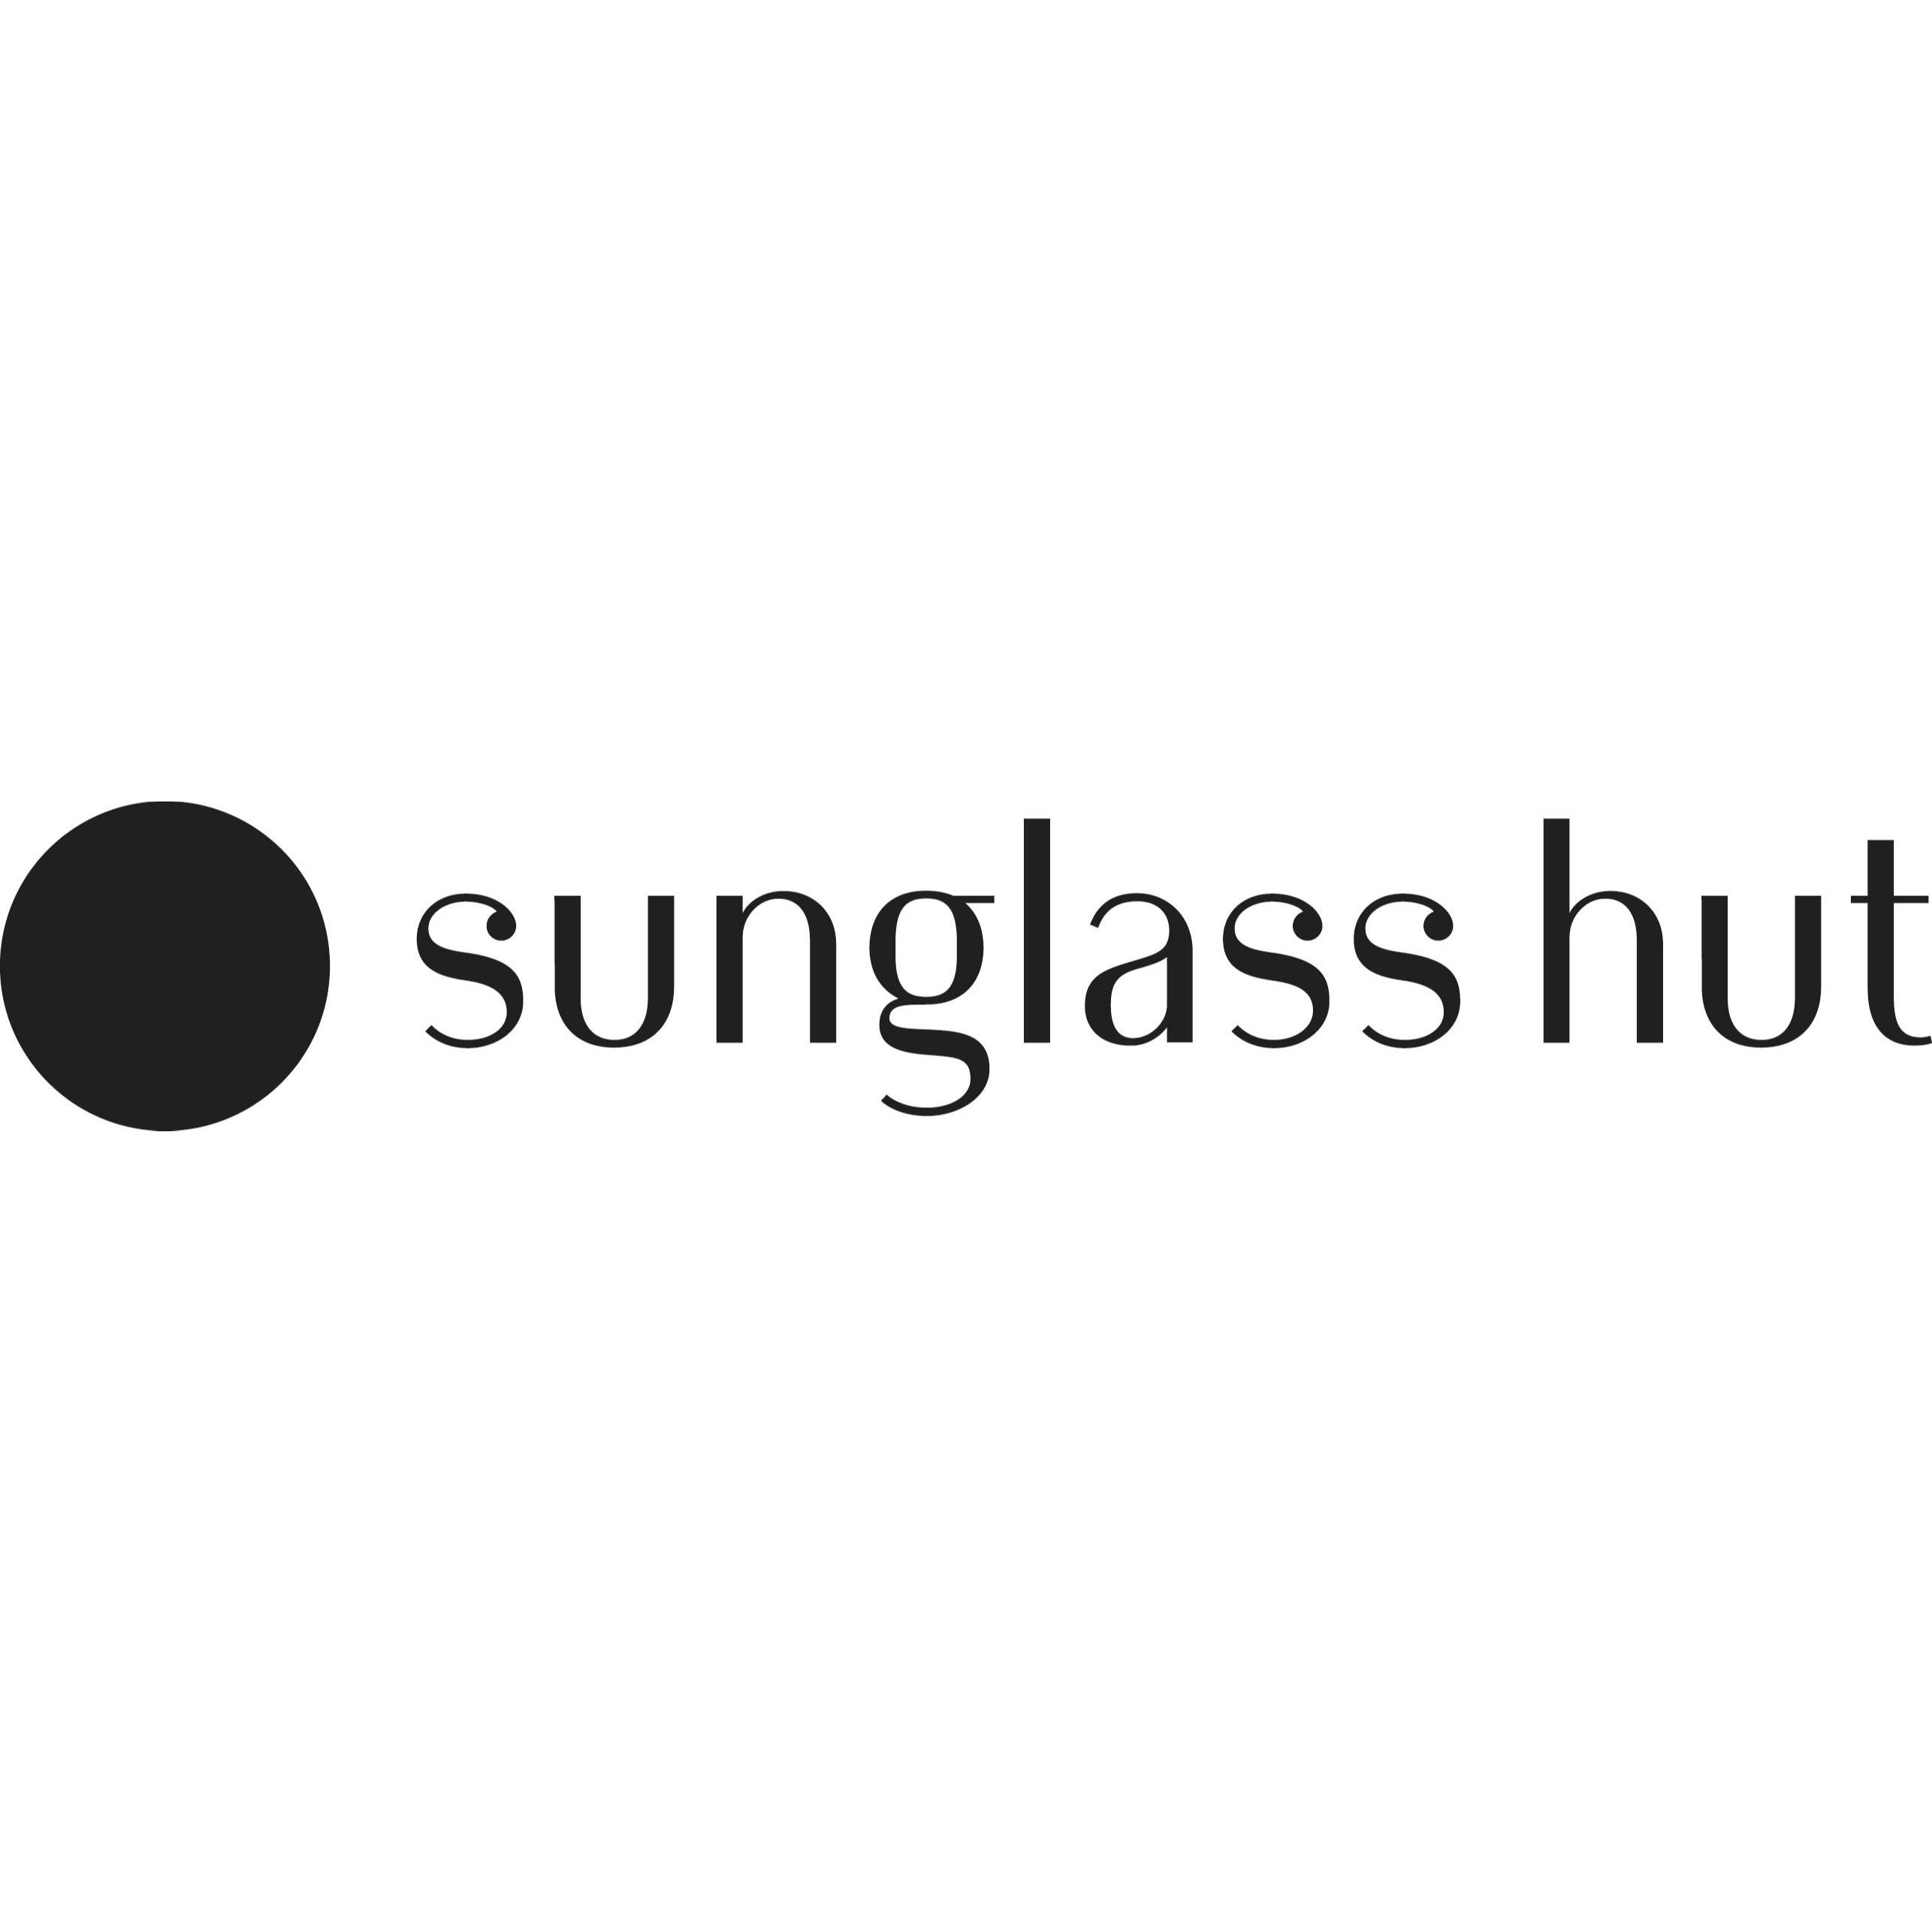 Sunglass Hut Rundle Mall Logo